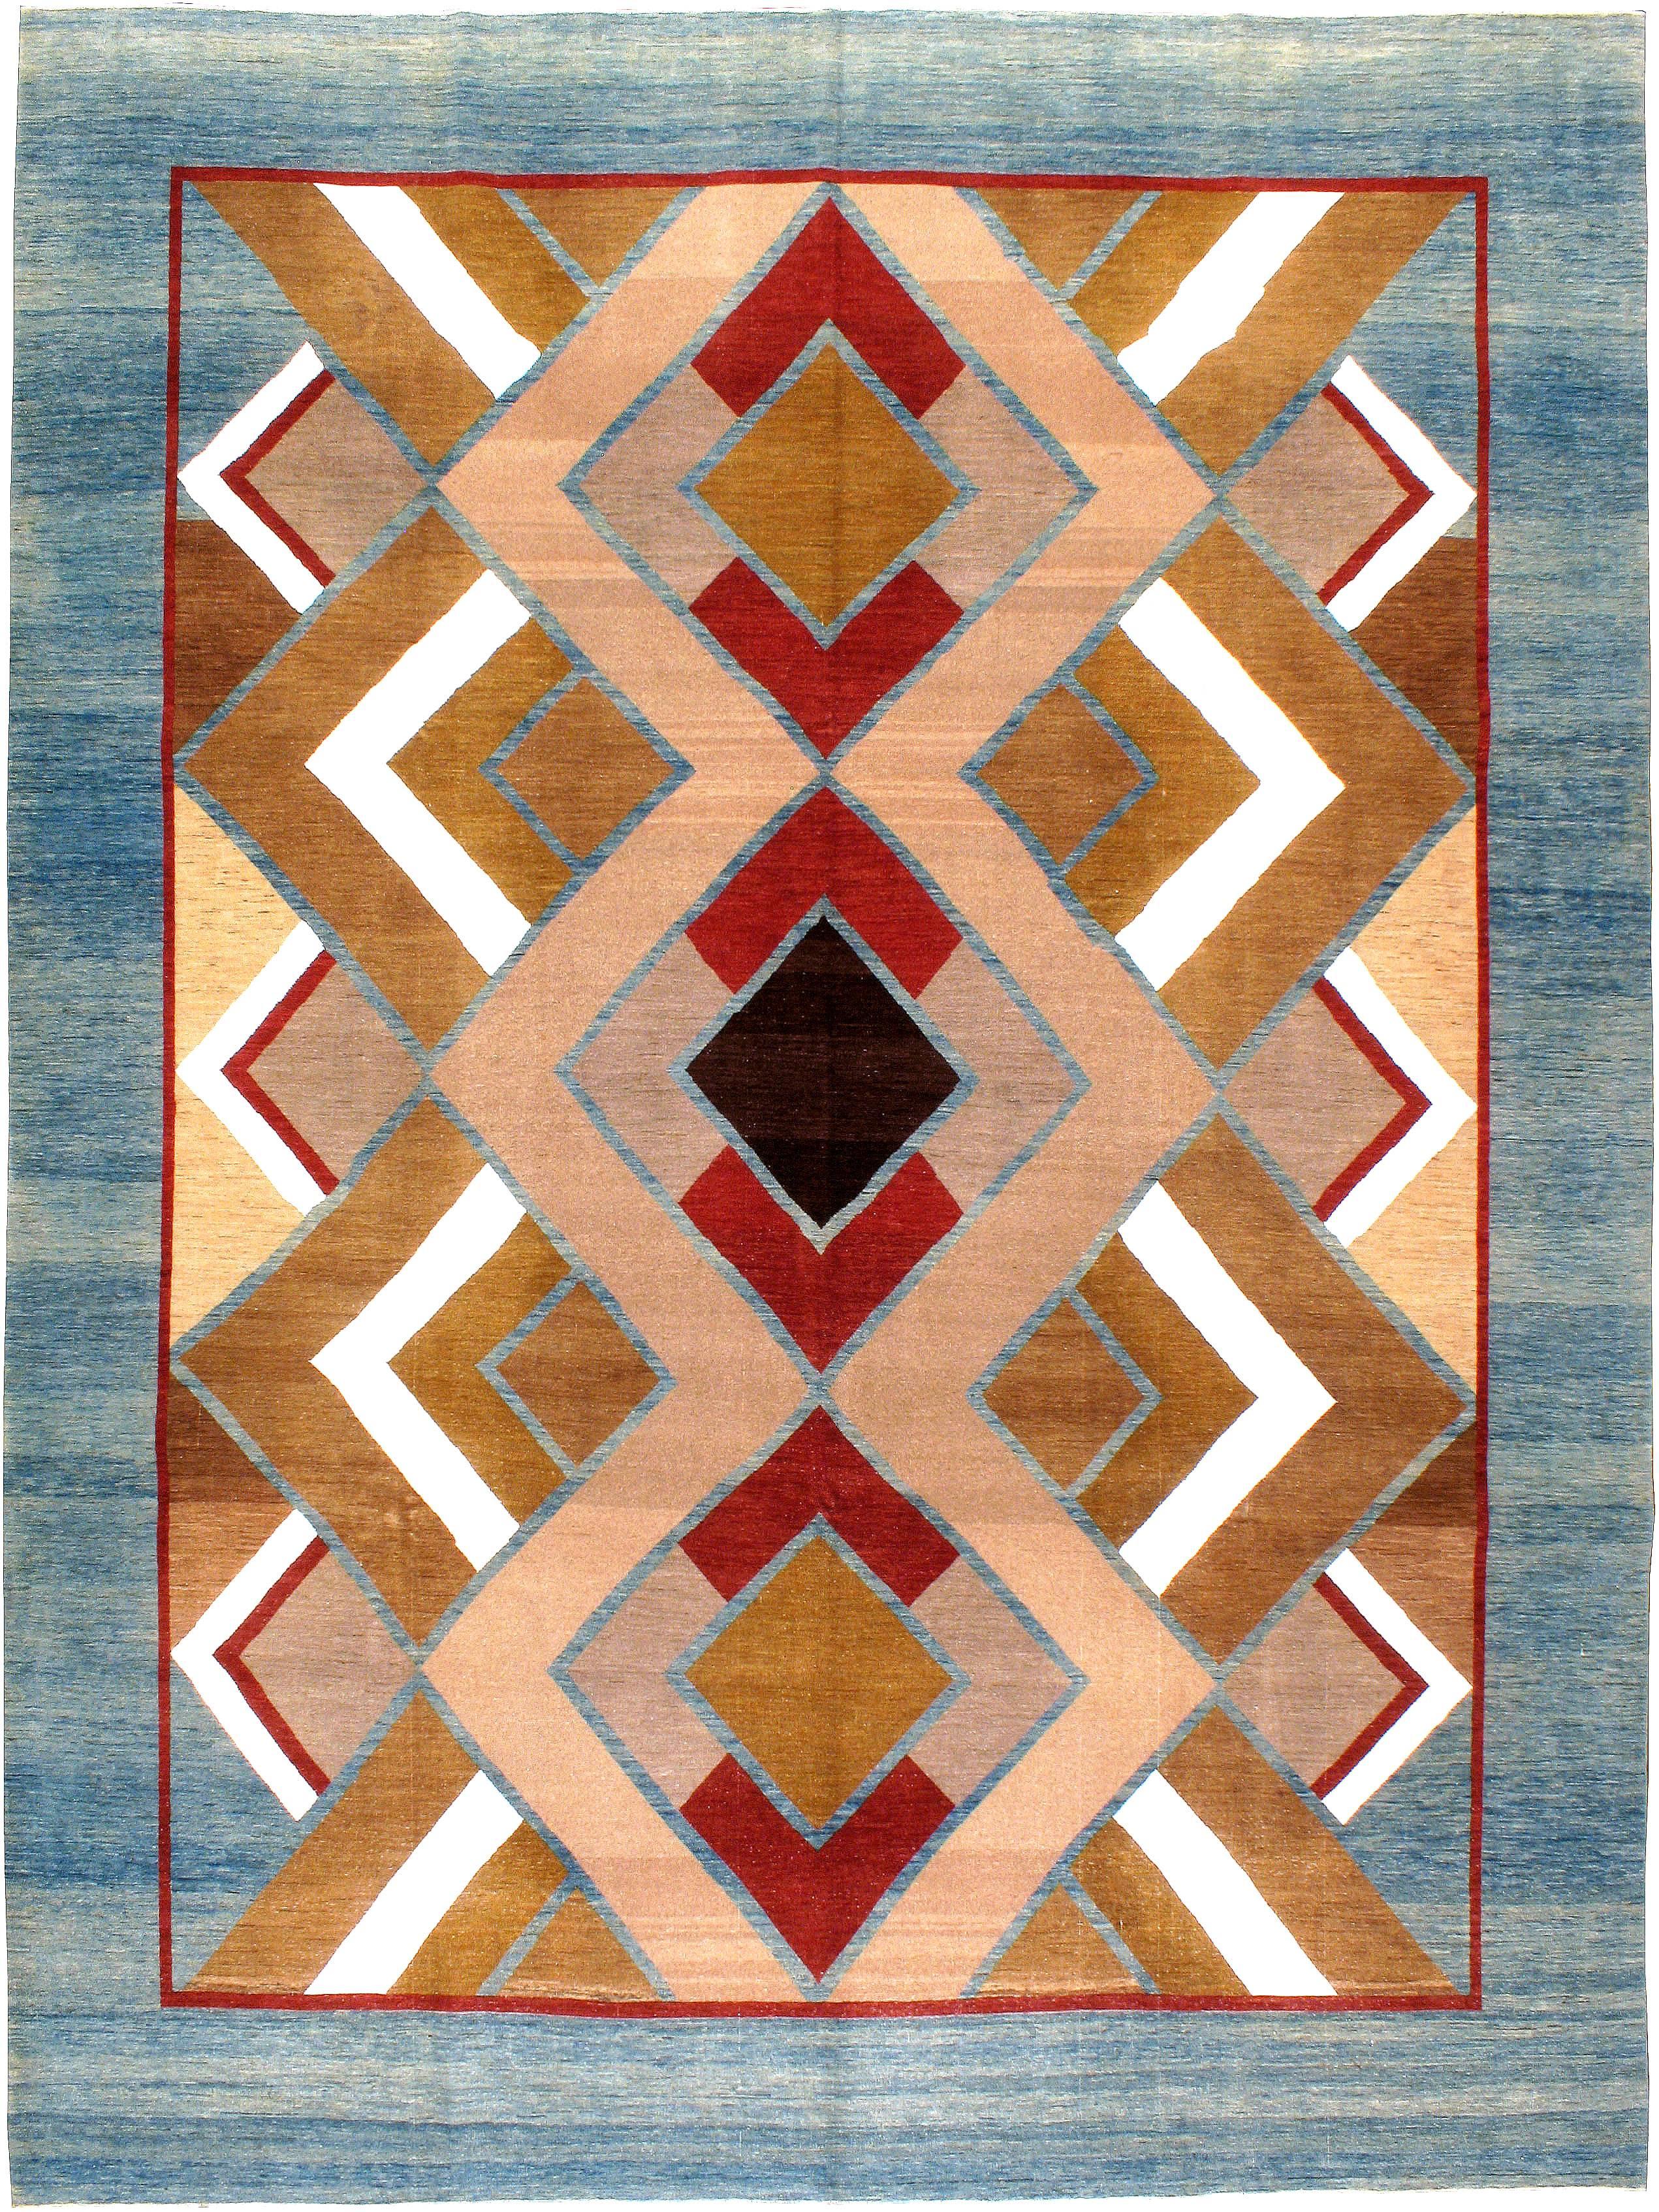 Tapis persan au design moderniste du quatrième quart du 20e siècle. Ce tapis a été tissé avec de la laine ancienne réutilisée pour ressembler à une patine vintage.